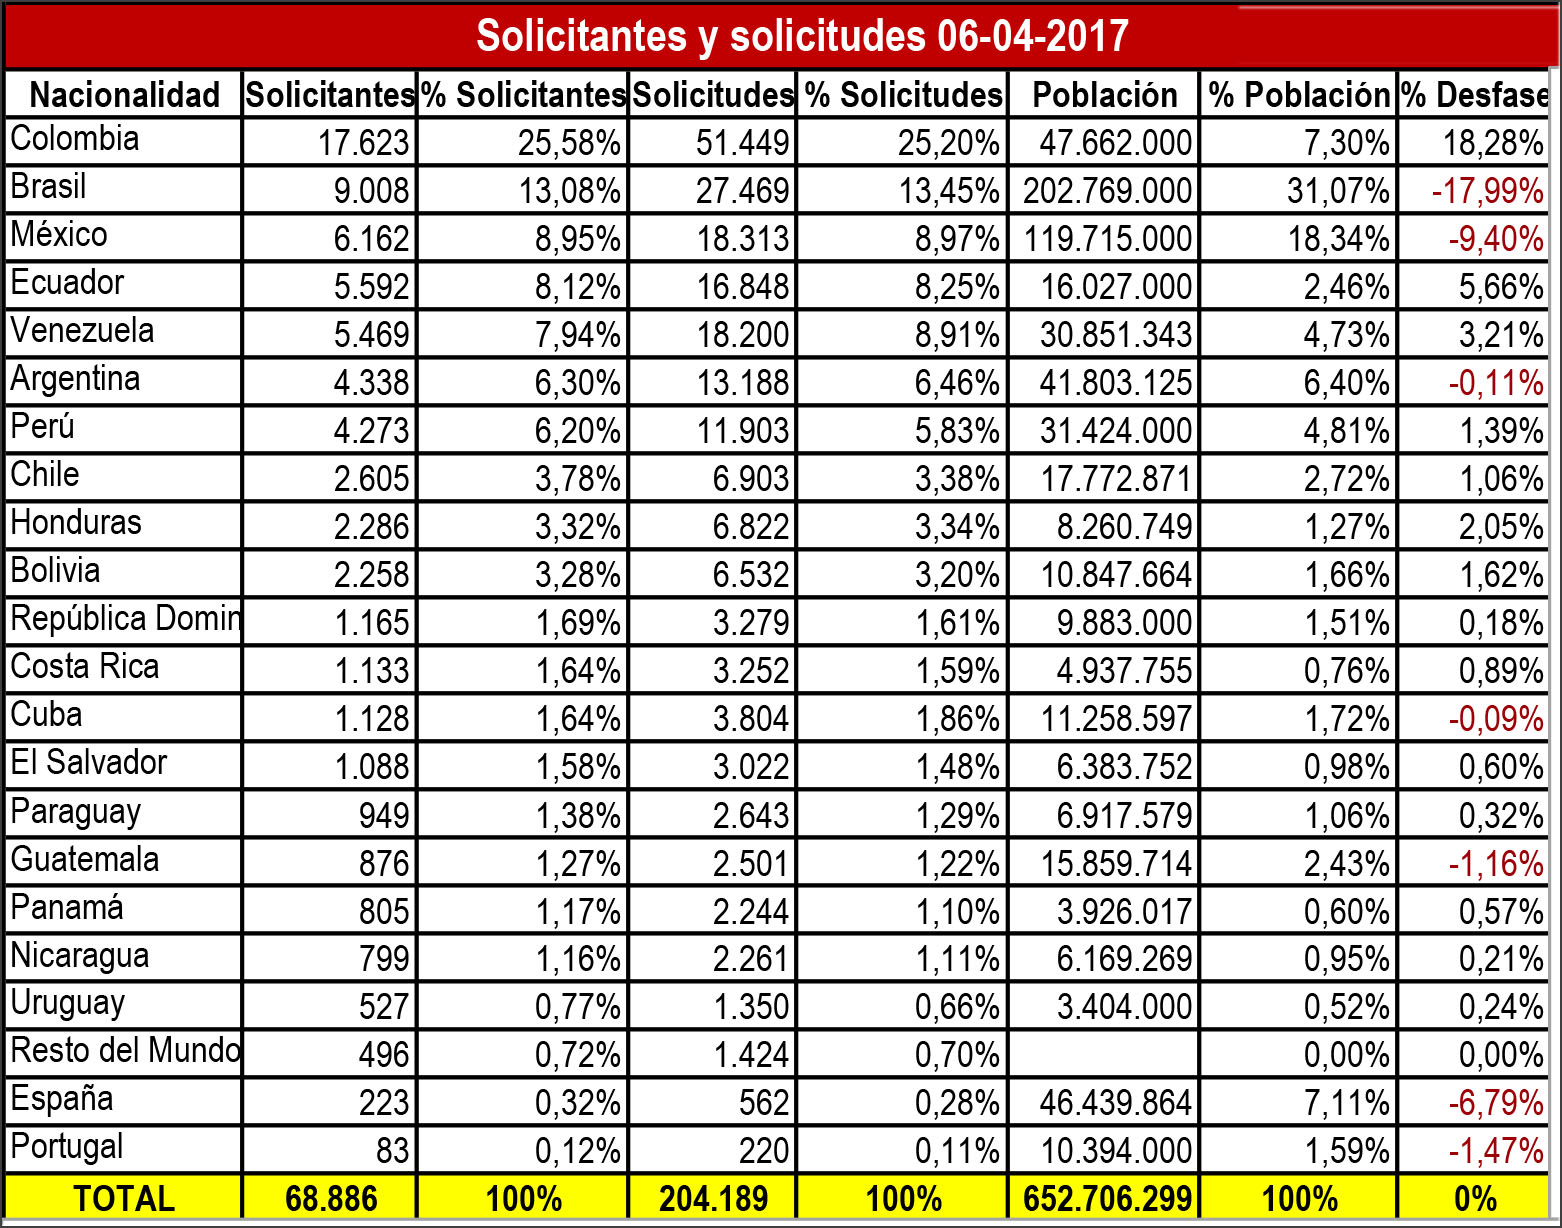 SOLICITANTES Y SOLICITUDES CONVOCATORIA 2017